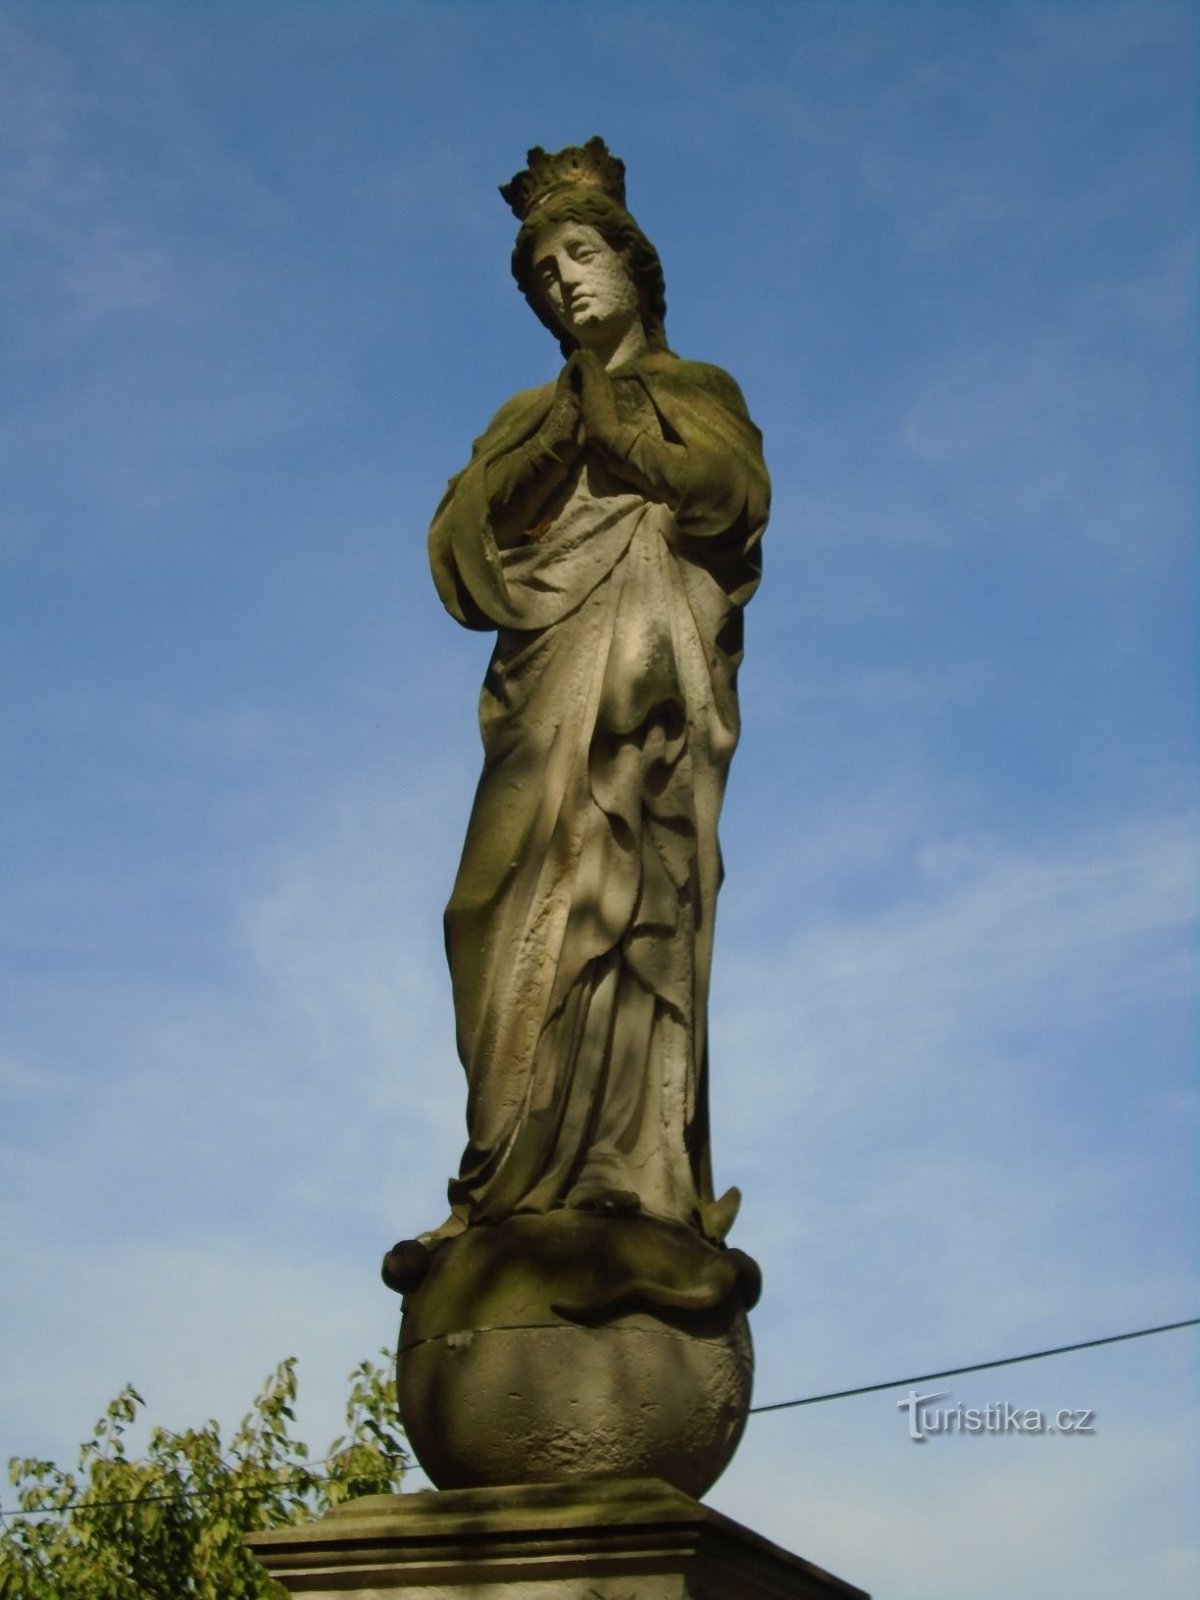 圣母玛利亚雕像（Rosnice，21.9.2018 年 XNUMX 月 XNUMX 日）